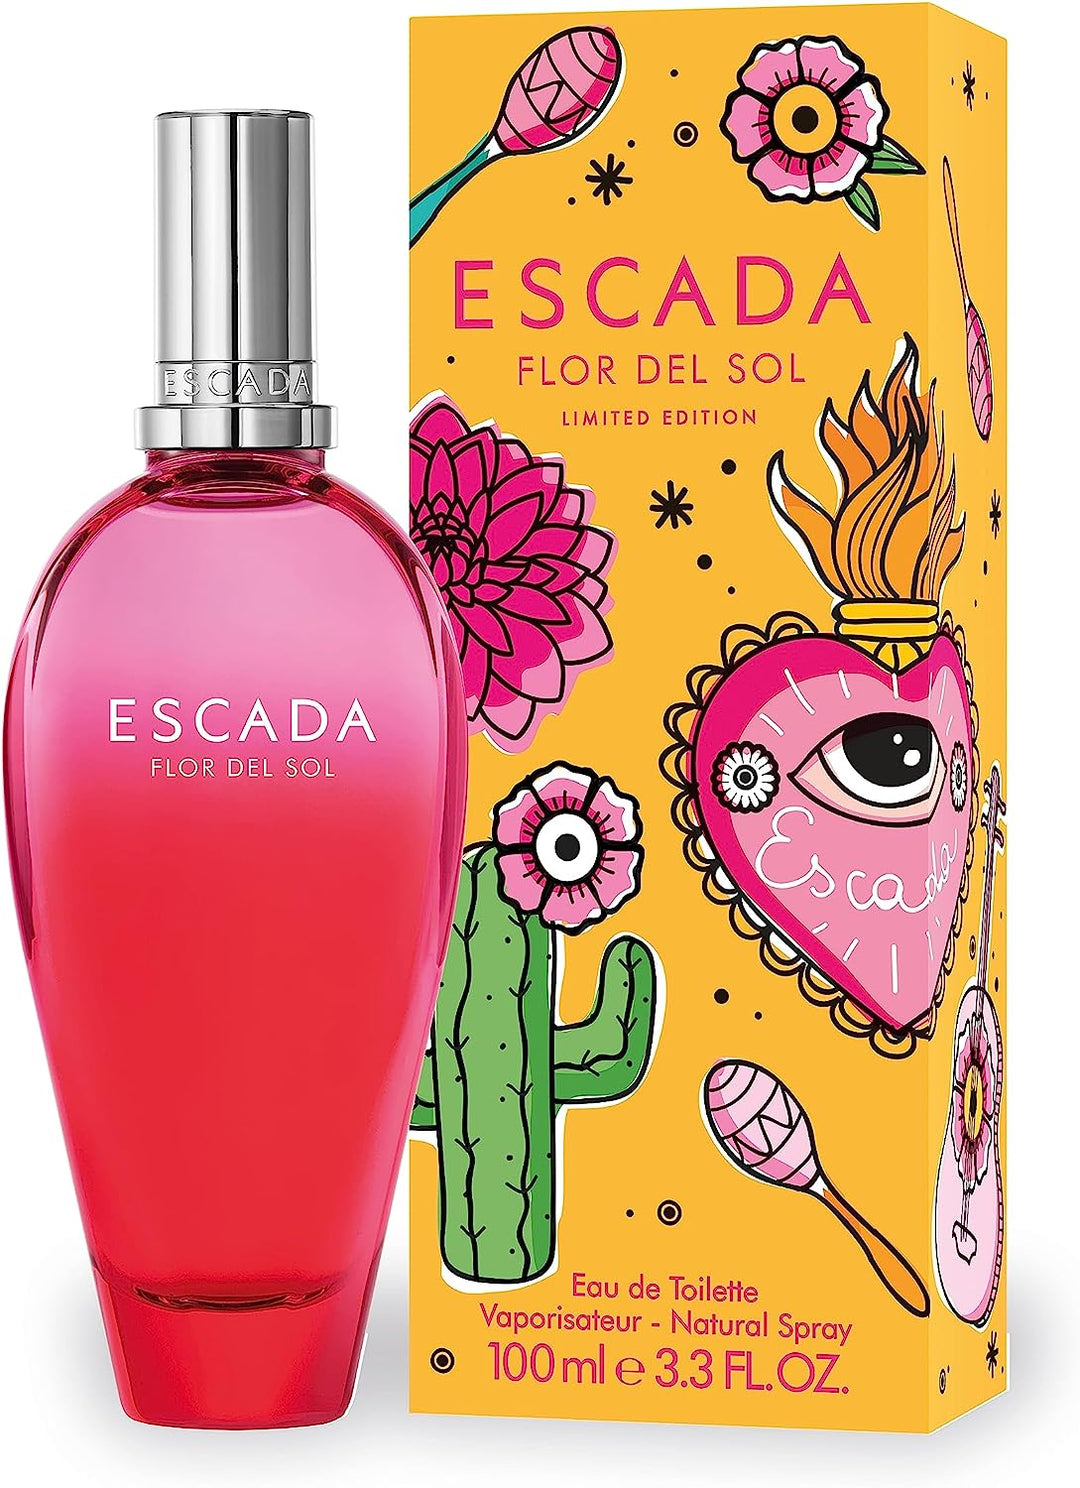 Escada Flor Del Sol Limited Edition